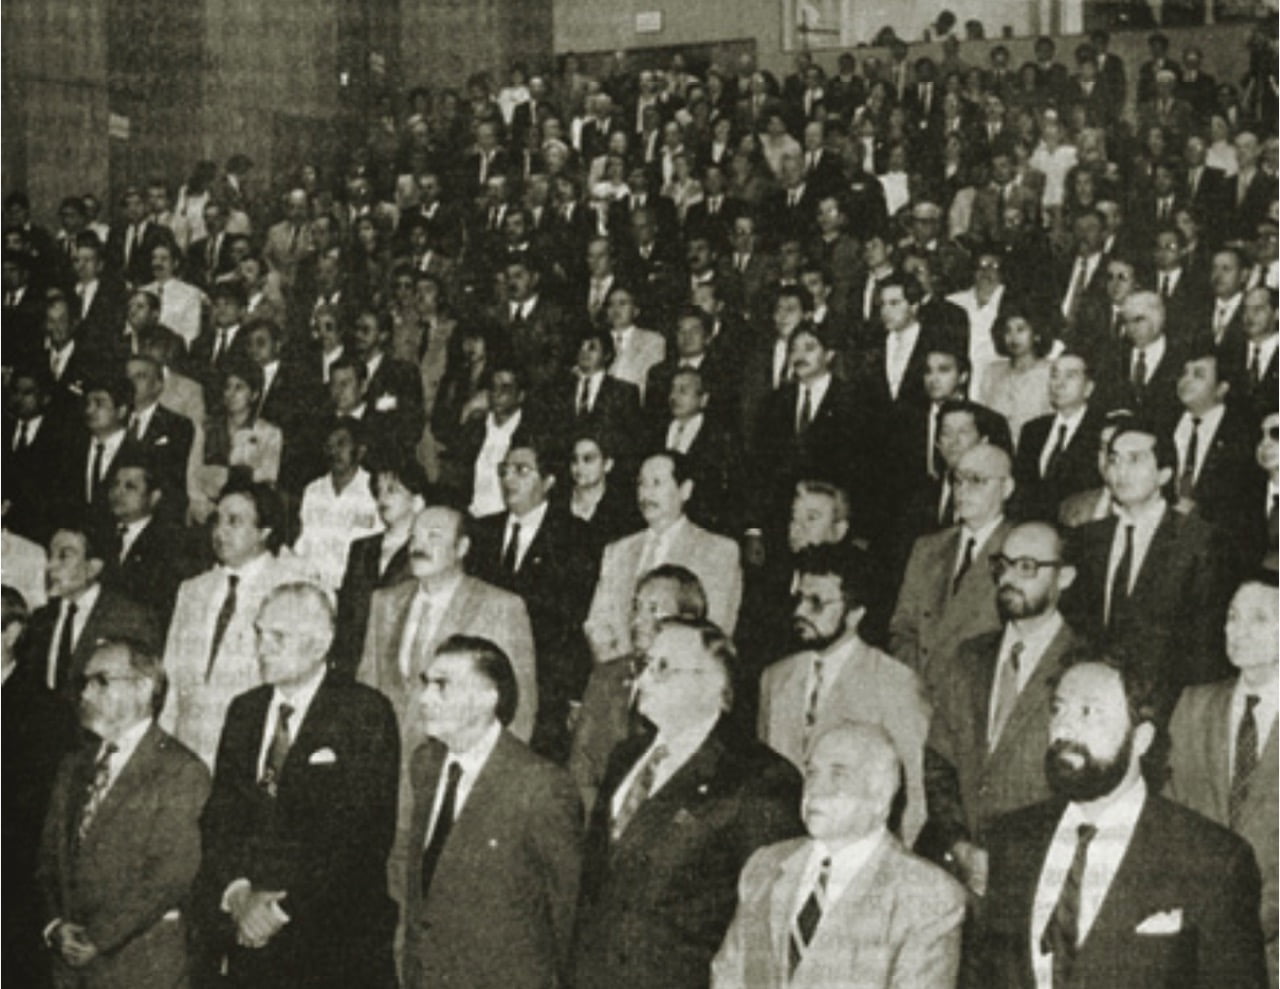 Convención Nacional Constituyente, junio 1992. Jura de la Constitución por los convencionales. Banco Central del Paraguay, junio de 1992. Archivo 